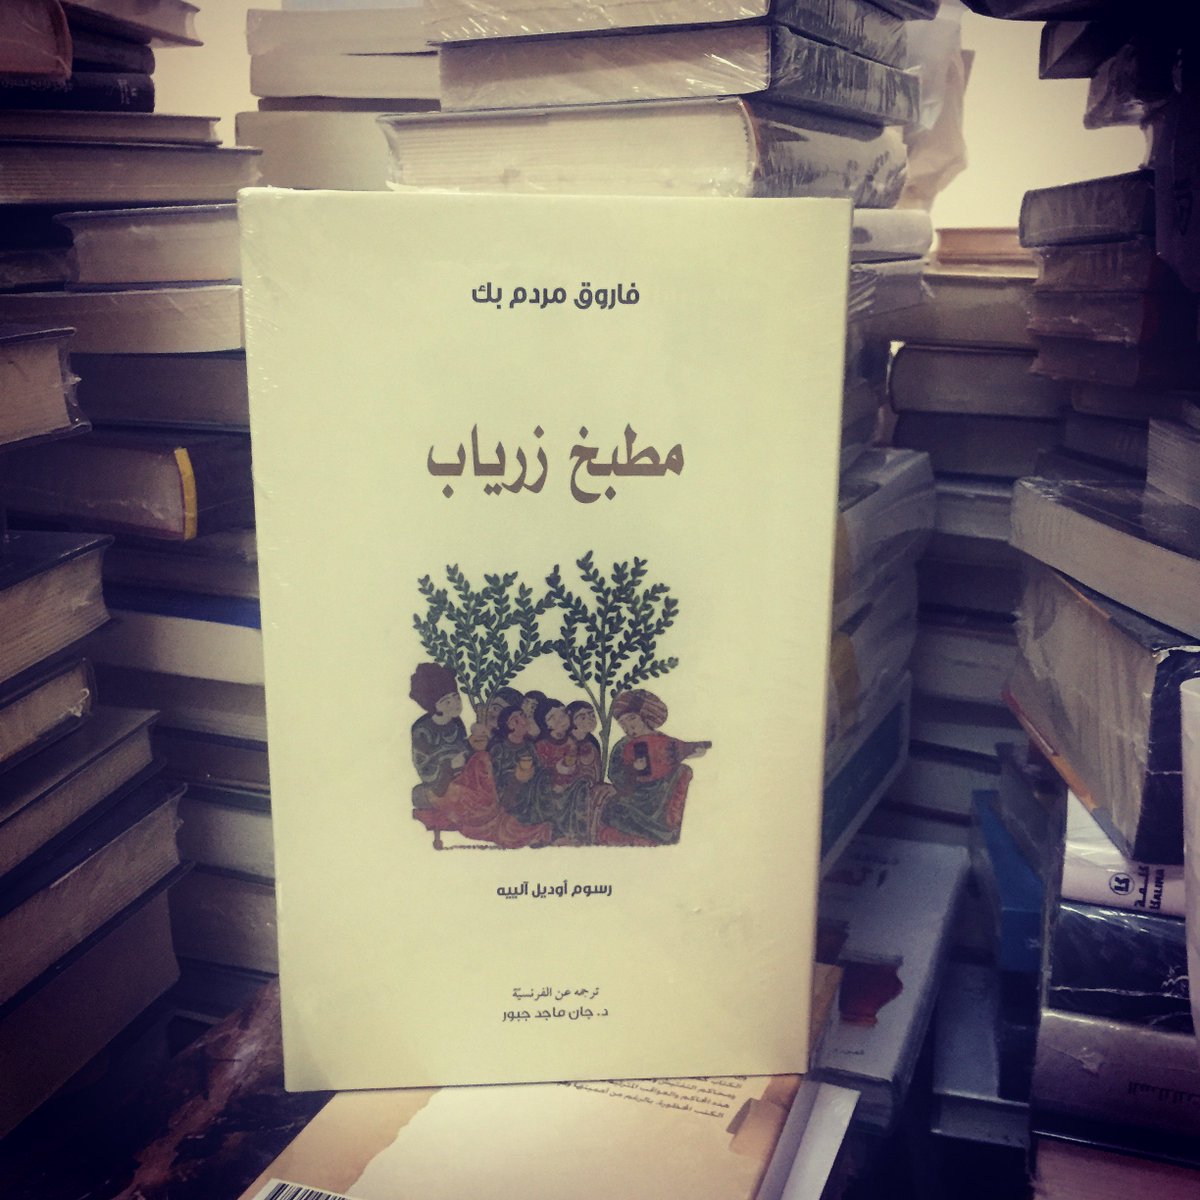 مطبخ زرياب.. تاريخ الطبخ كمزحة جادة / محمود حسني